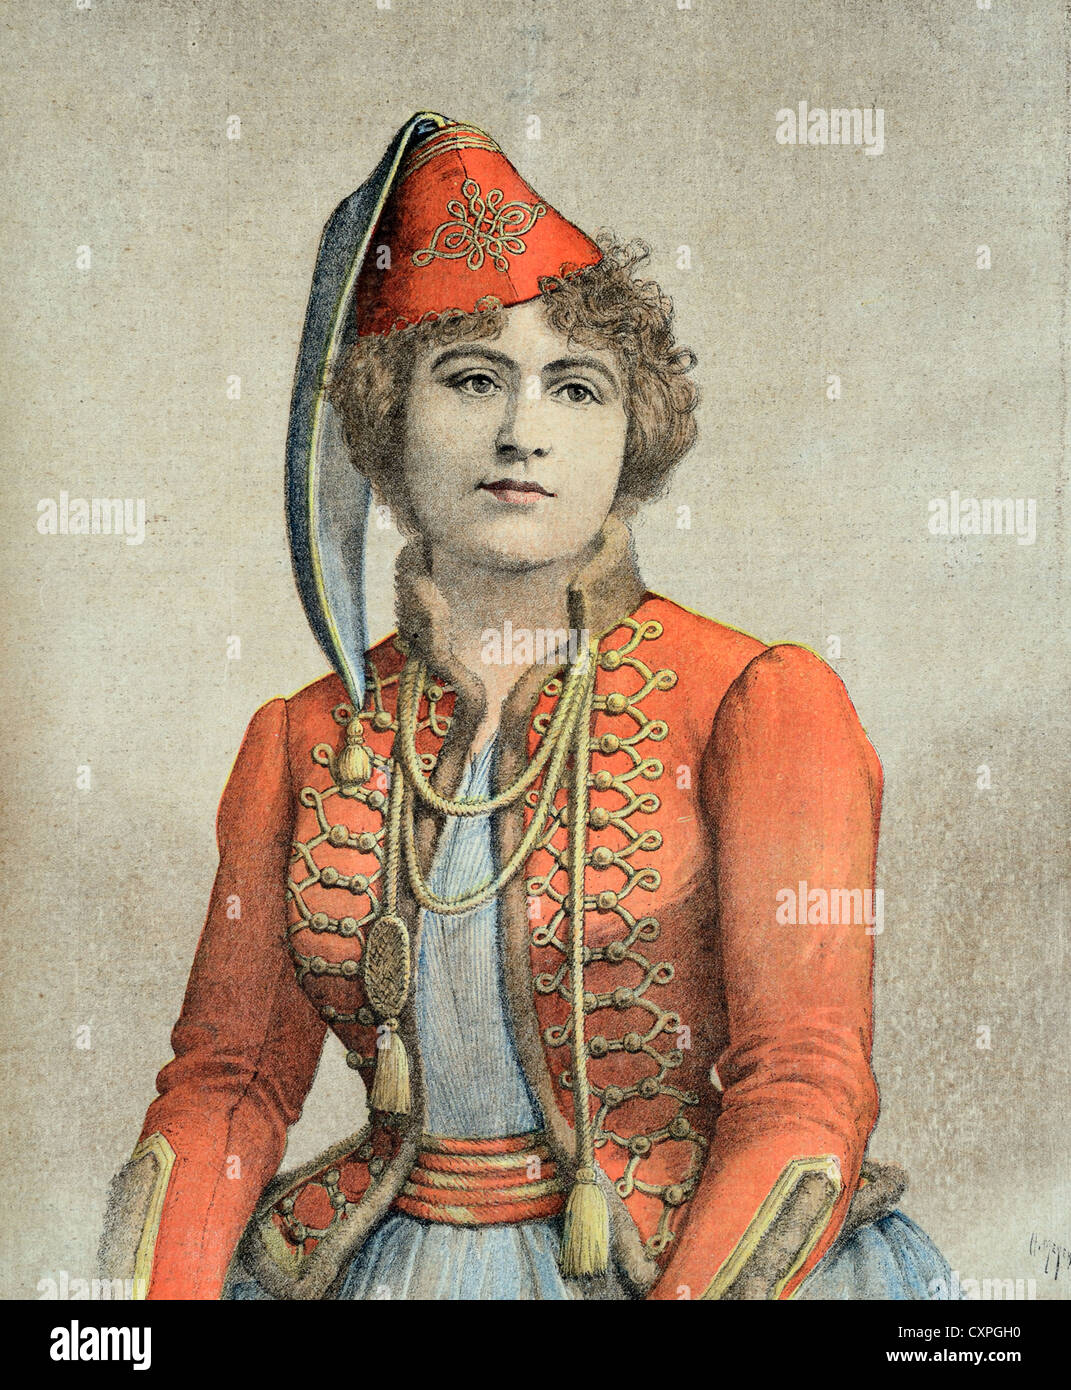 Ritratto di Marie Delna French mezzo-Soprano Opera Singer (1895) Francia. Illustrazione vintage o incisione vecchia Foto Stock